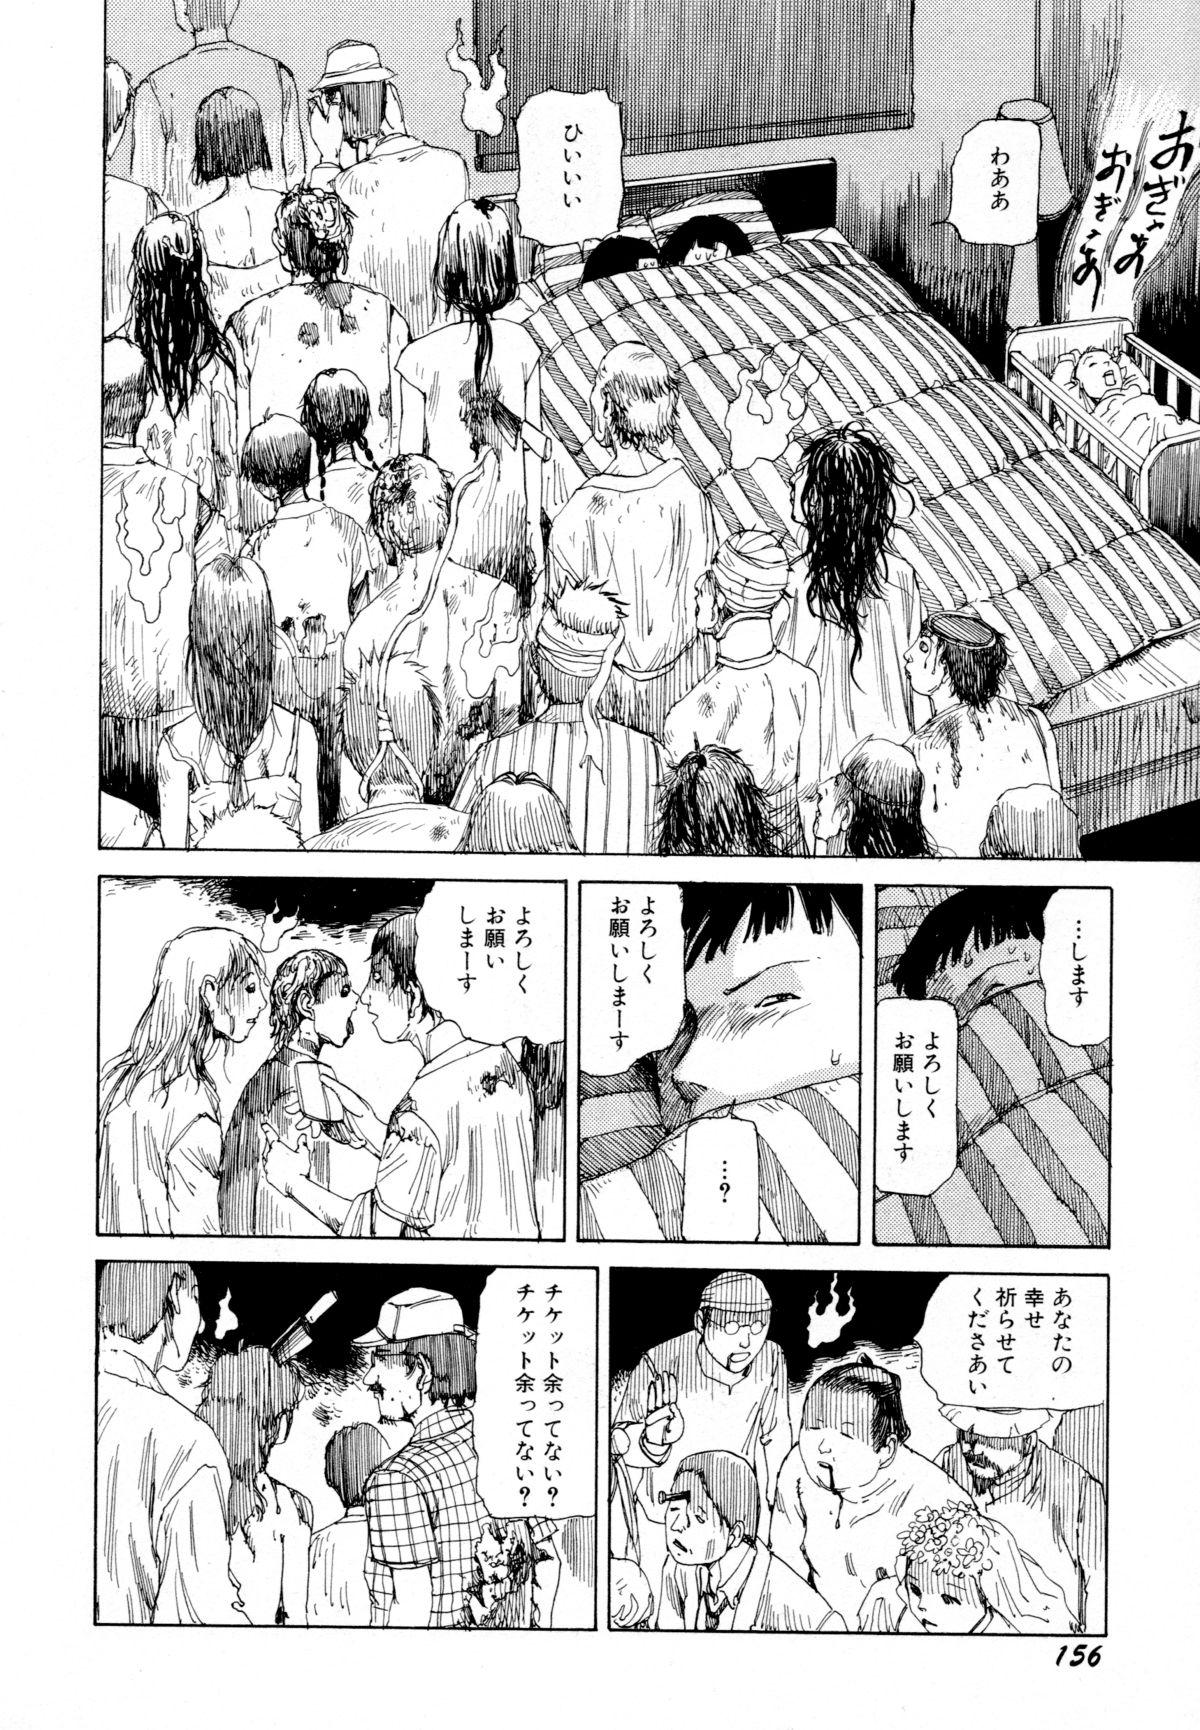 Arijigoku vs Barabara Shoujo - Antlion vs BaraBara Girl 157